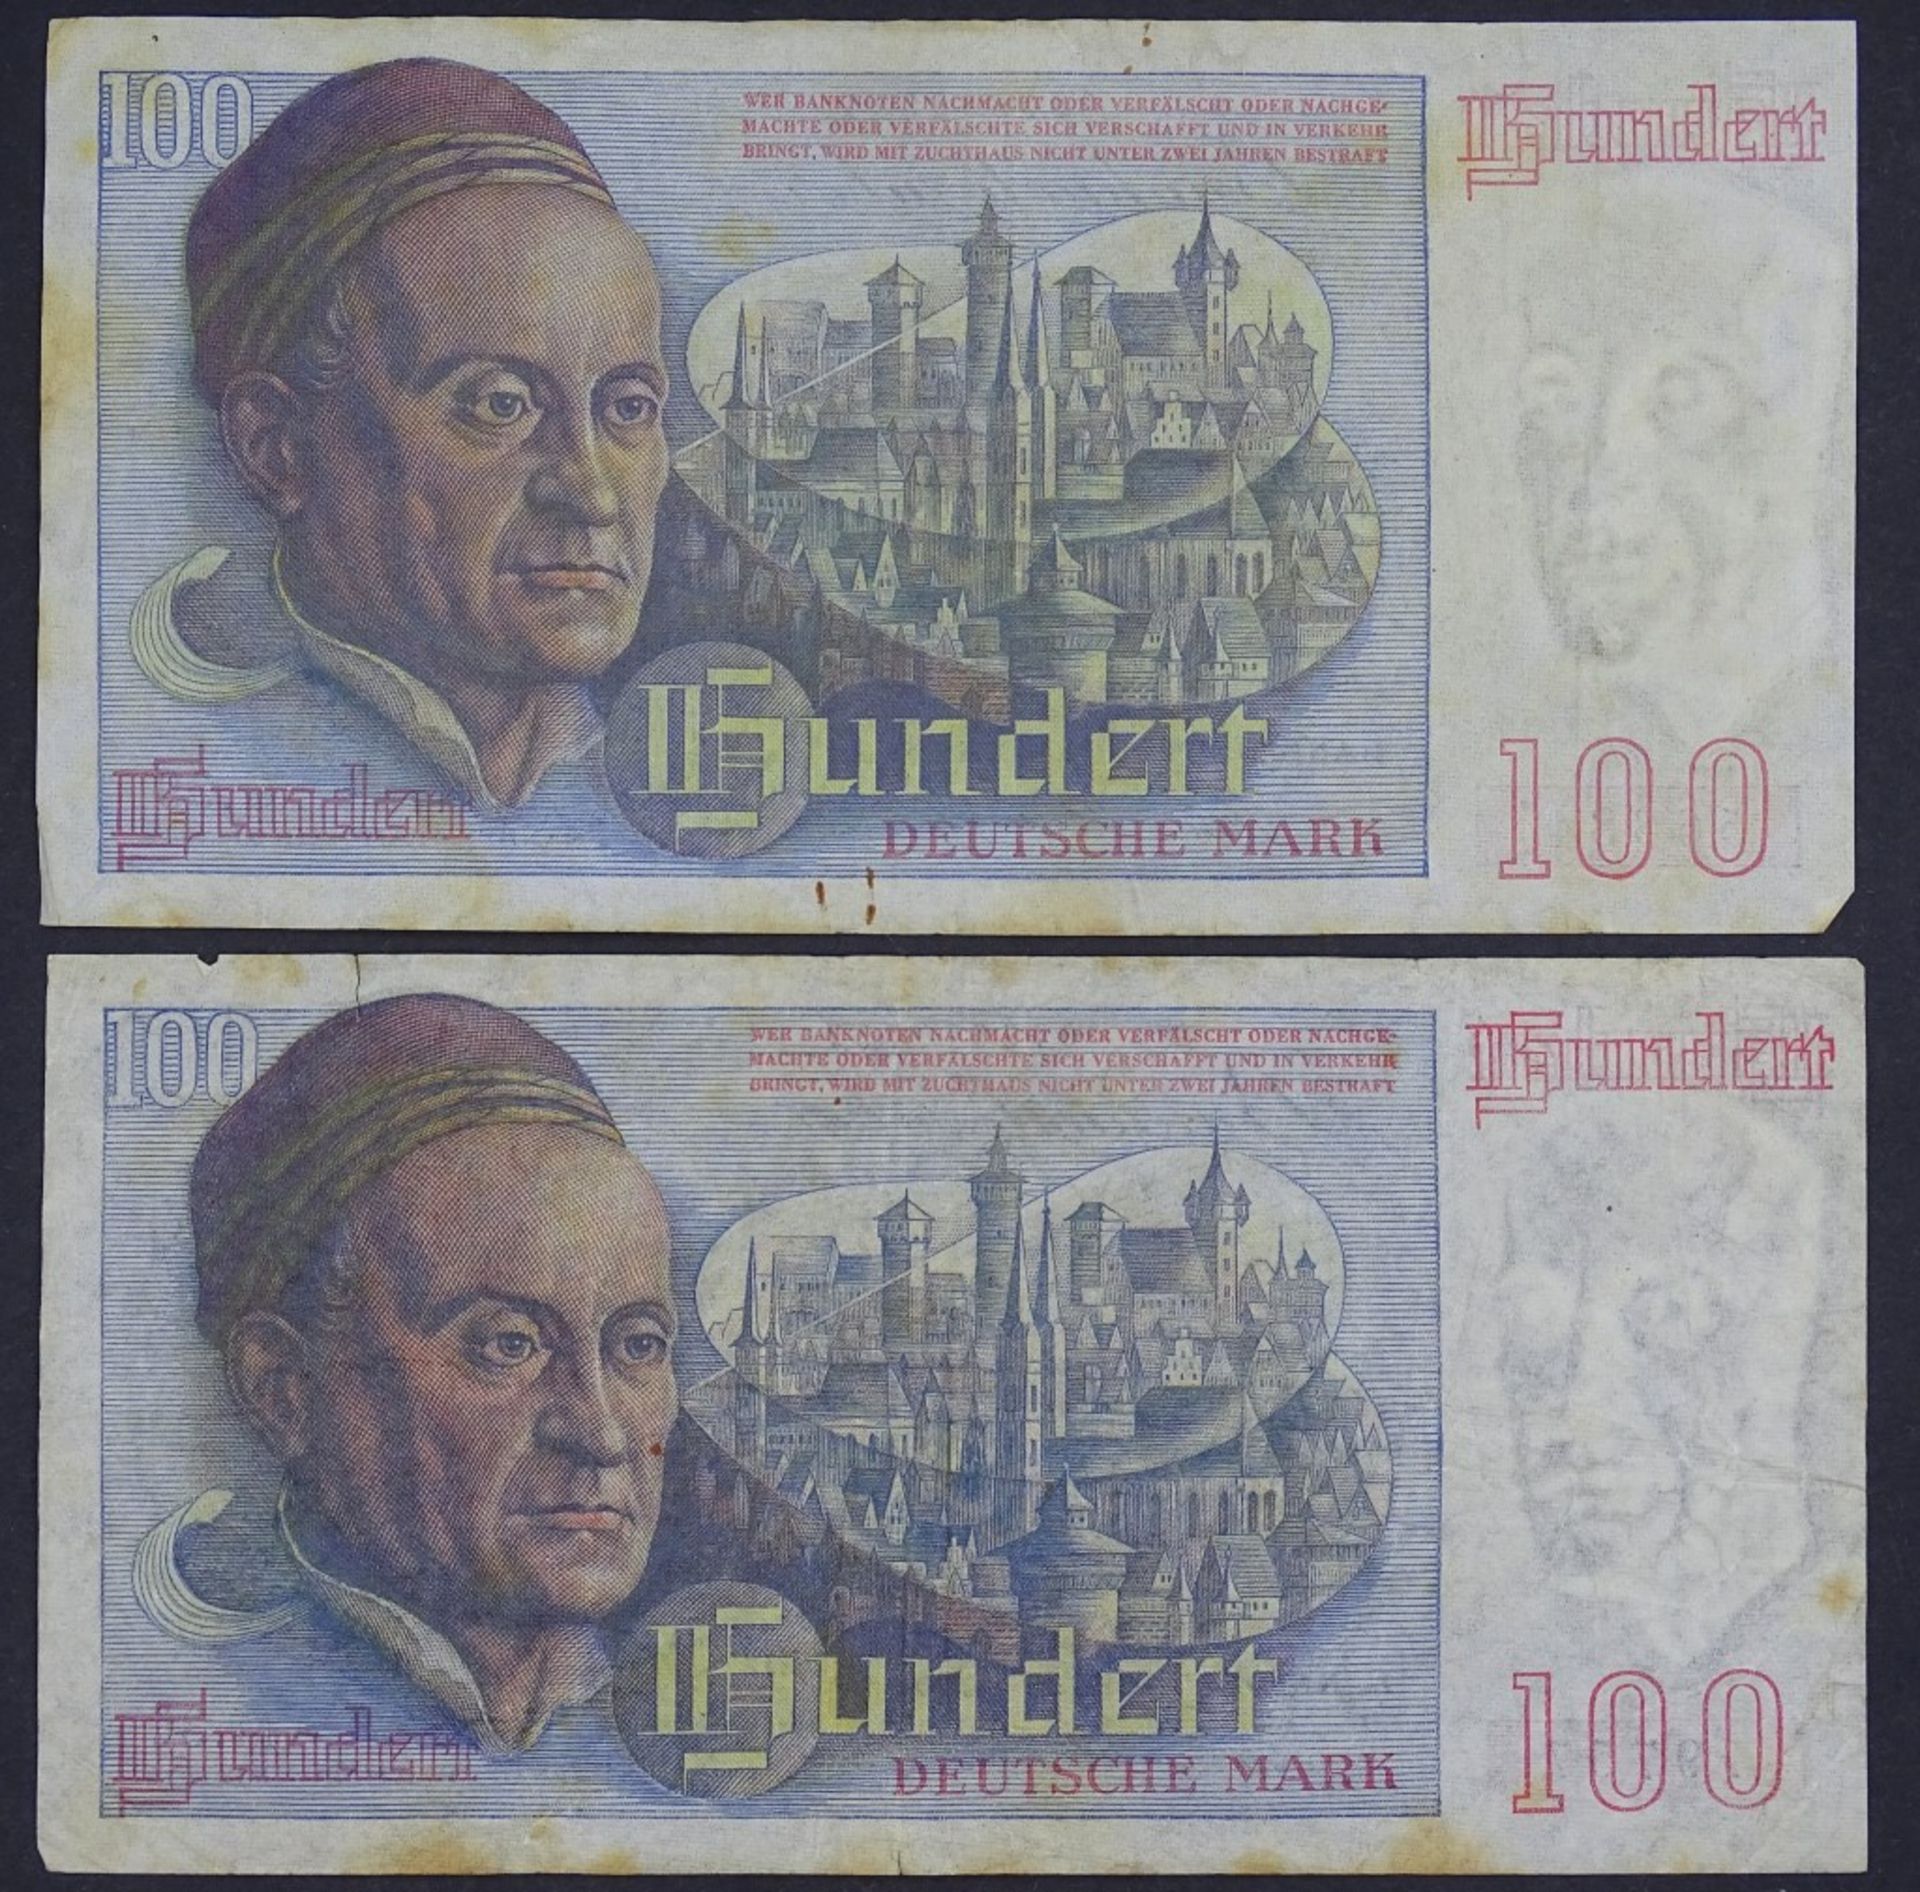 Zwei Banknoten - 100 Deutsche Mark 1948 - Bank Deutscher Lände- - -22.61 % buyer's premium on the - Bild 2 aus 2